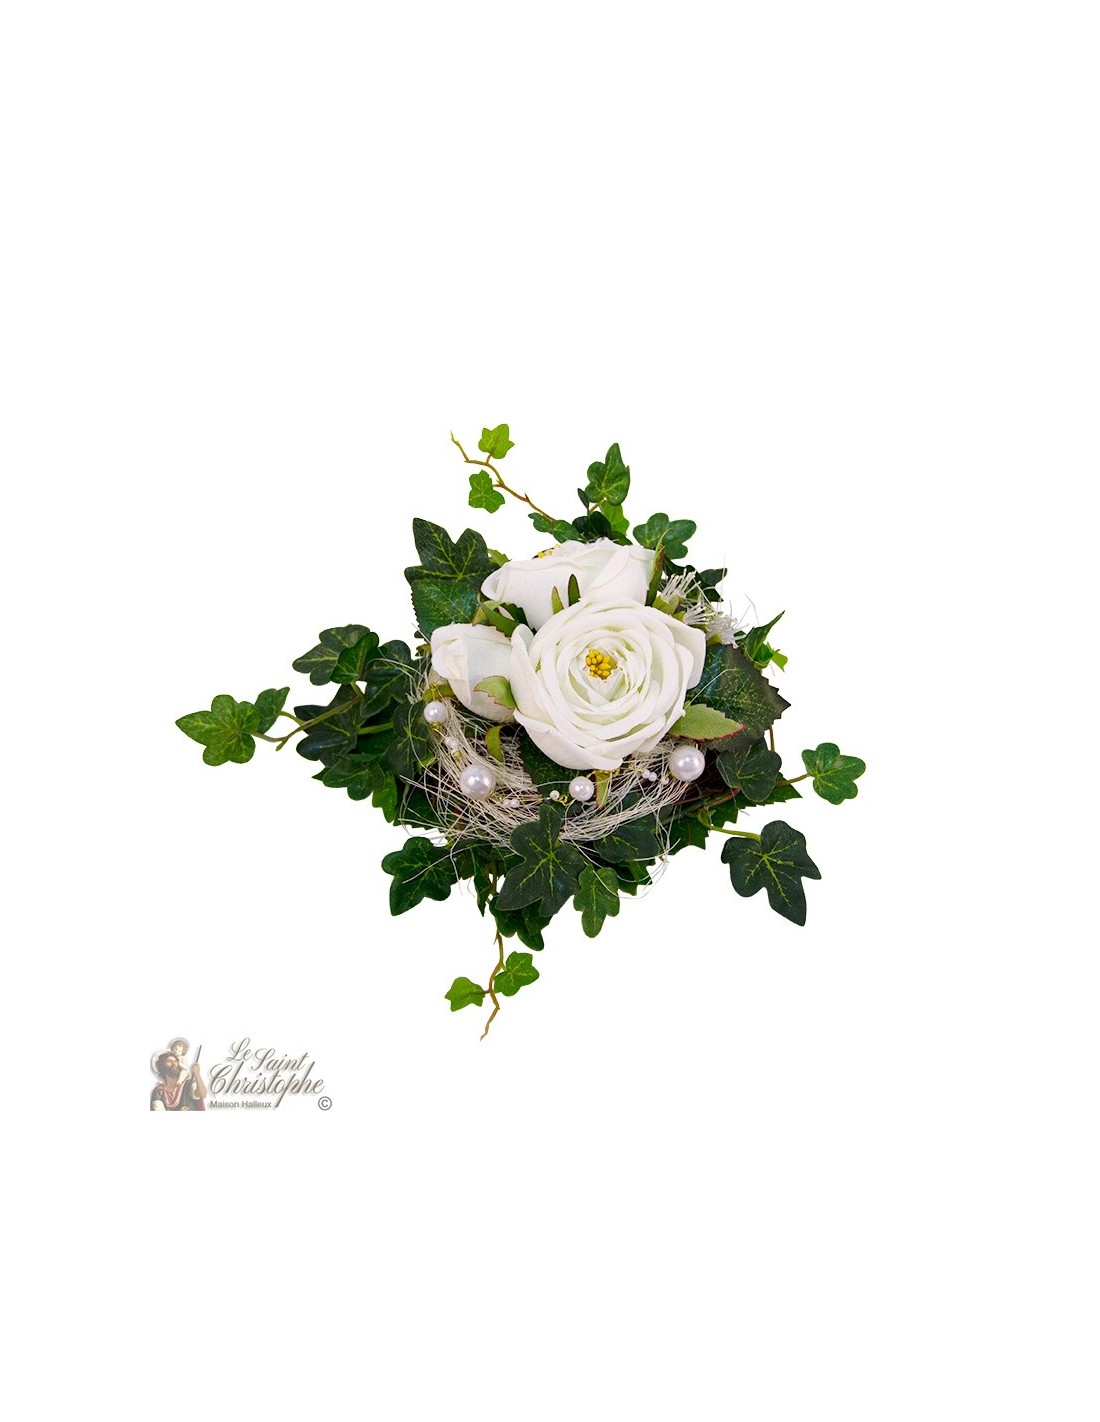 vijandigheid in verlegenheid gebracht Pence Doos met boeketten bloemen - witte bloemenkrans